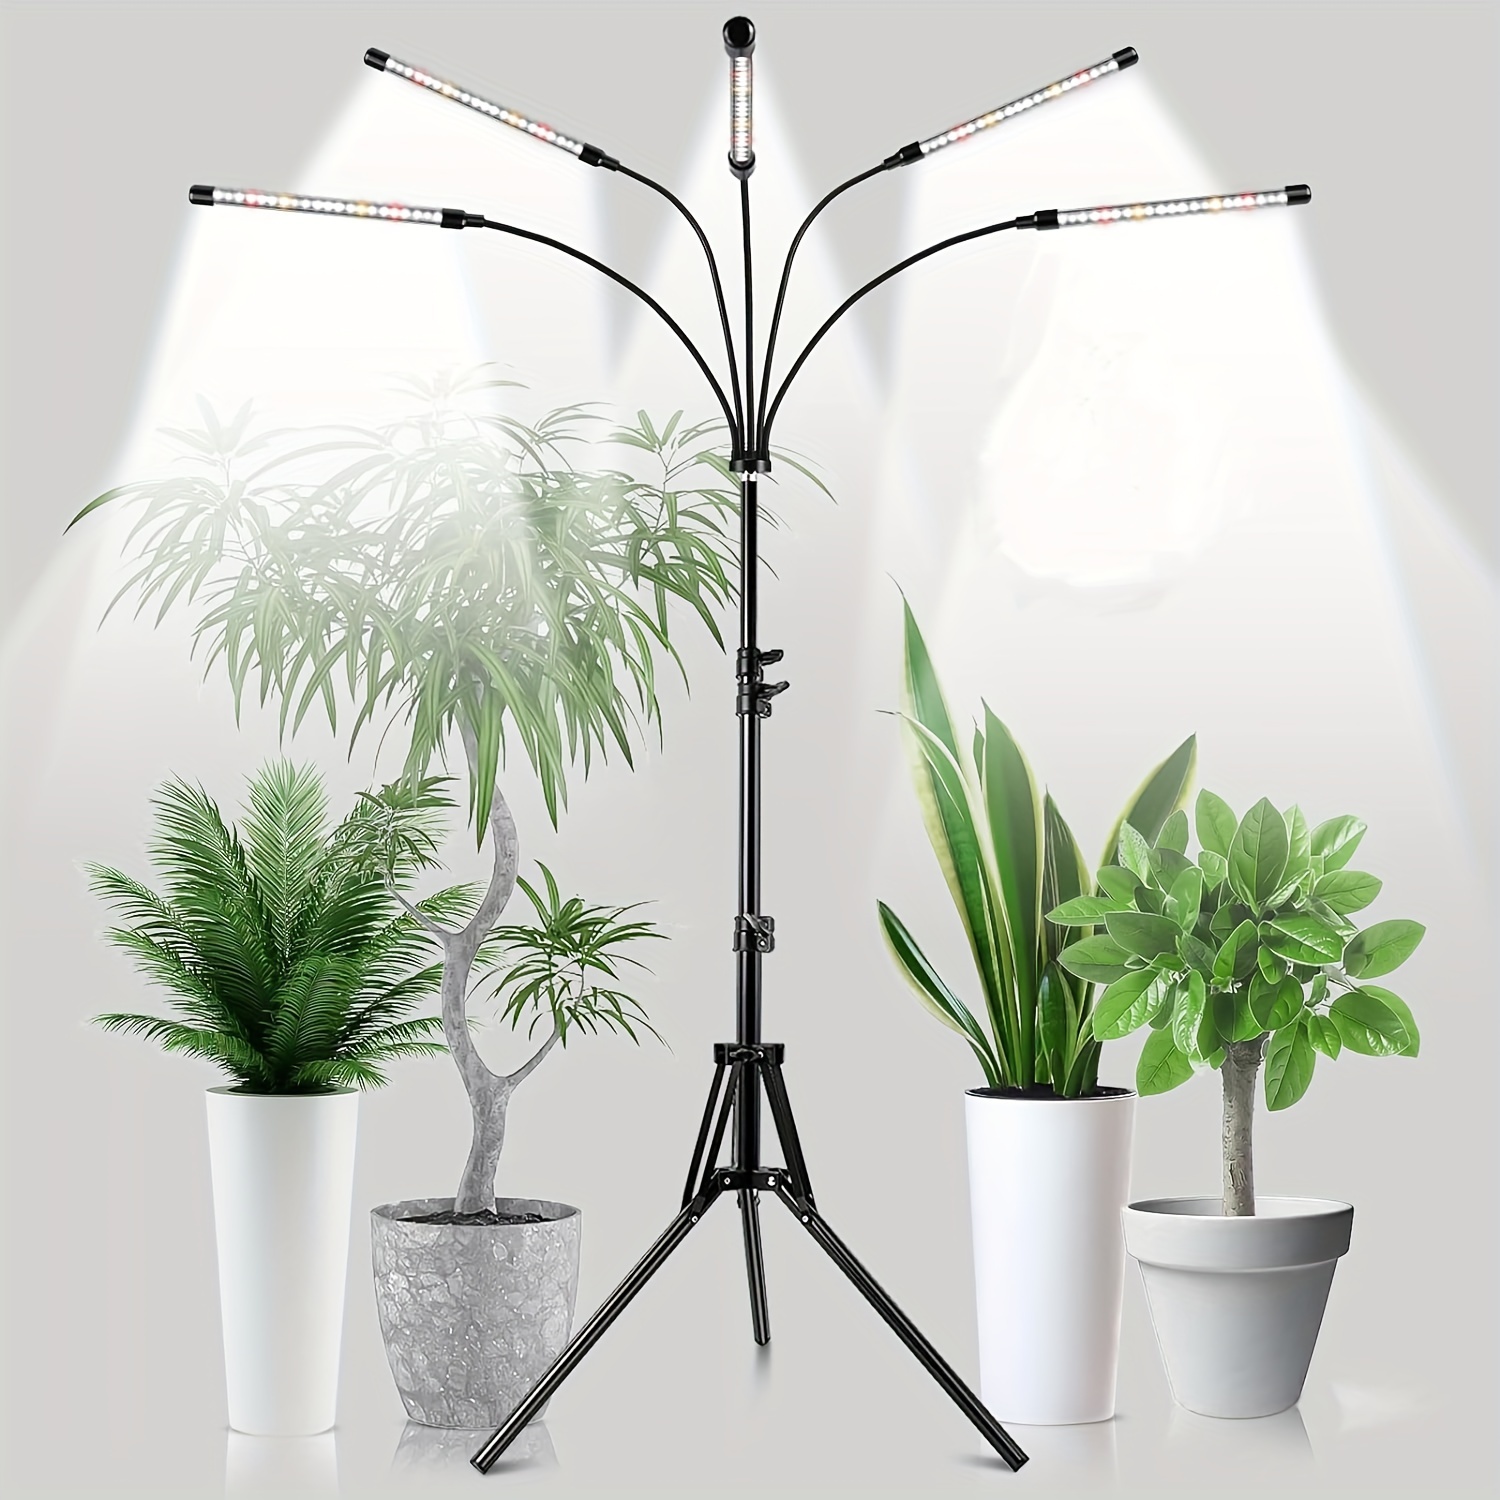 Plein-spectre 72 LED Lampe pour plantes, Lampe de culture avec